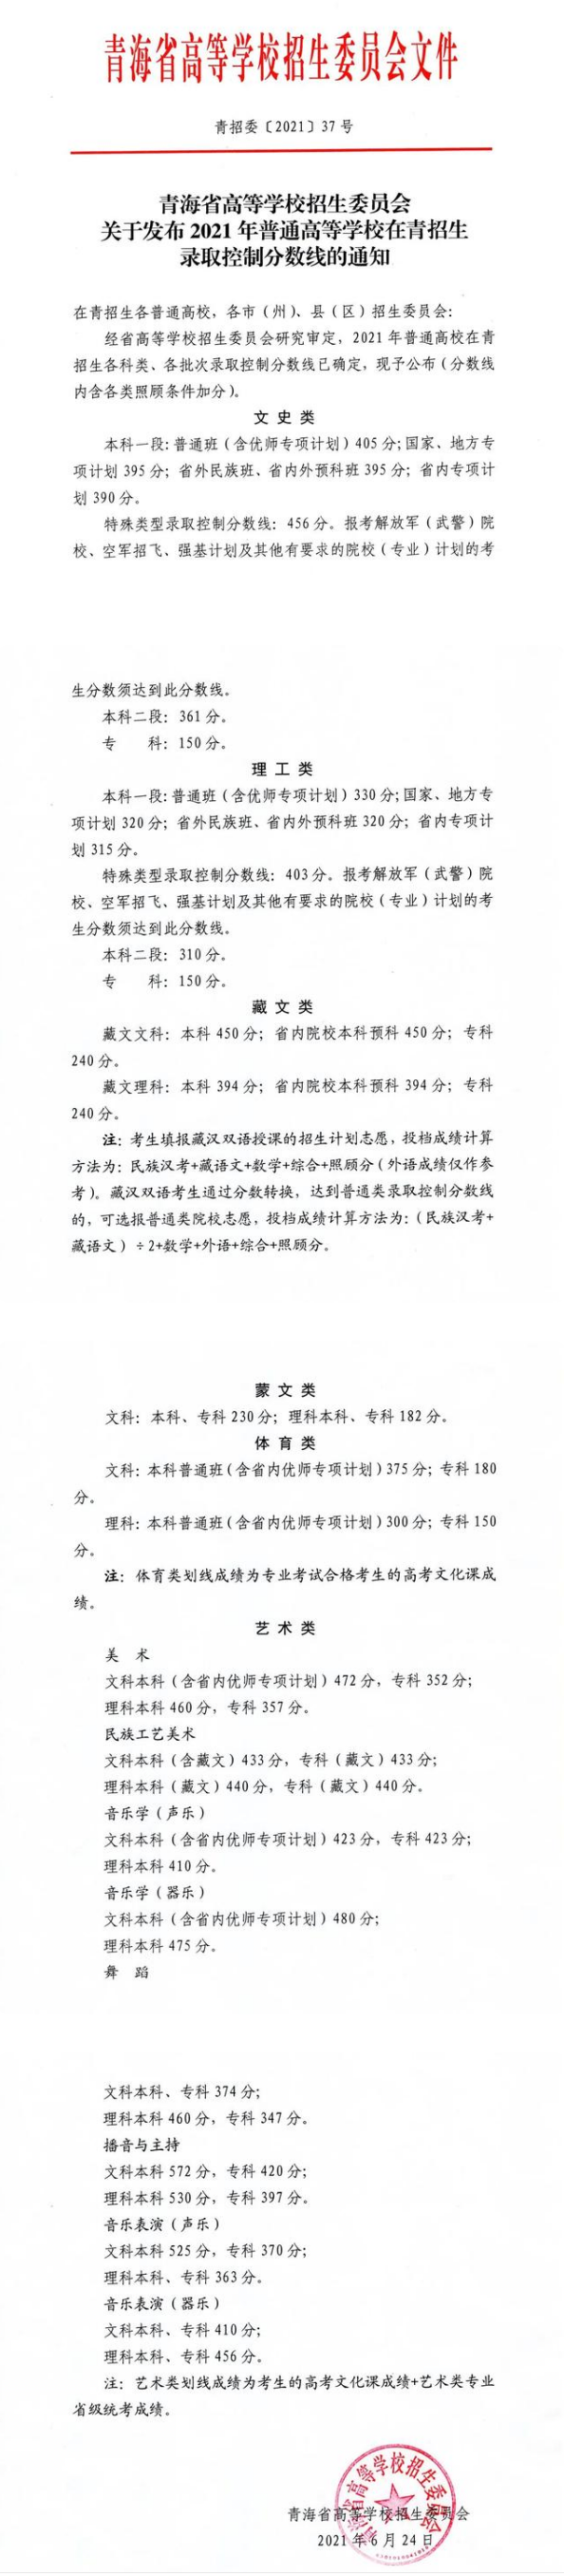 2022青海省高考录取分数线数据